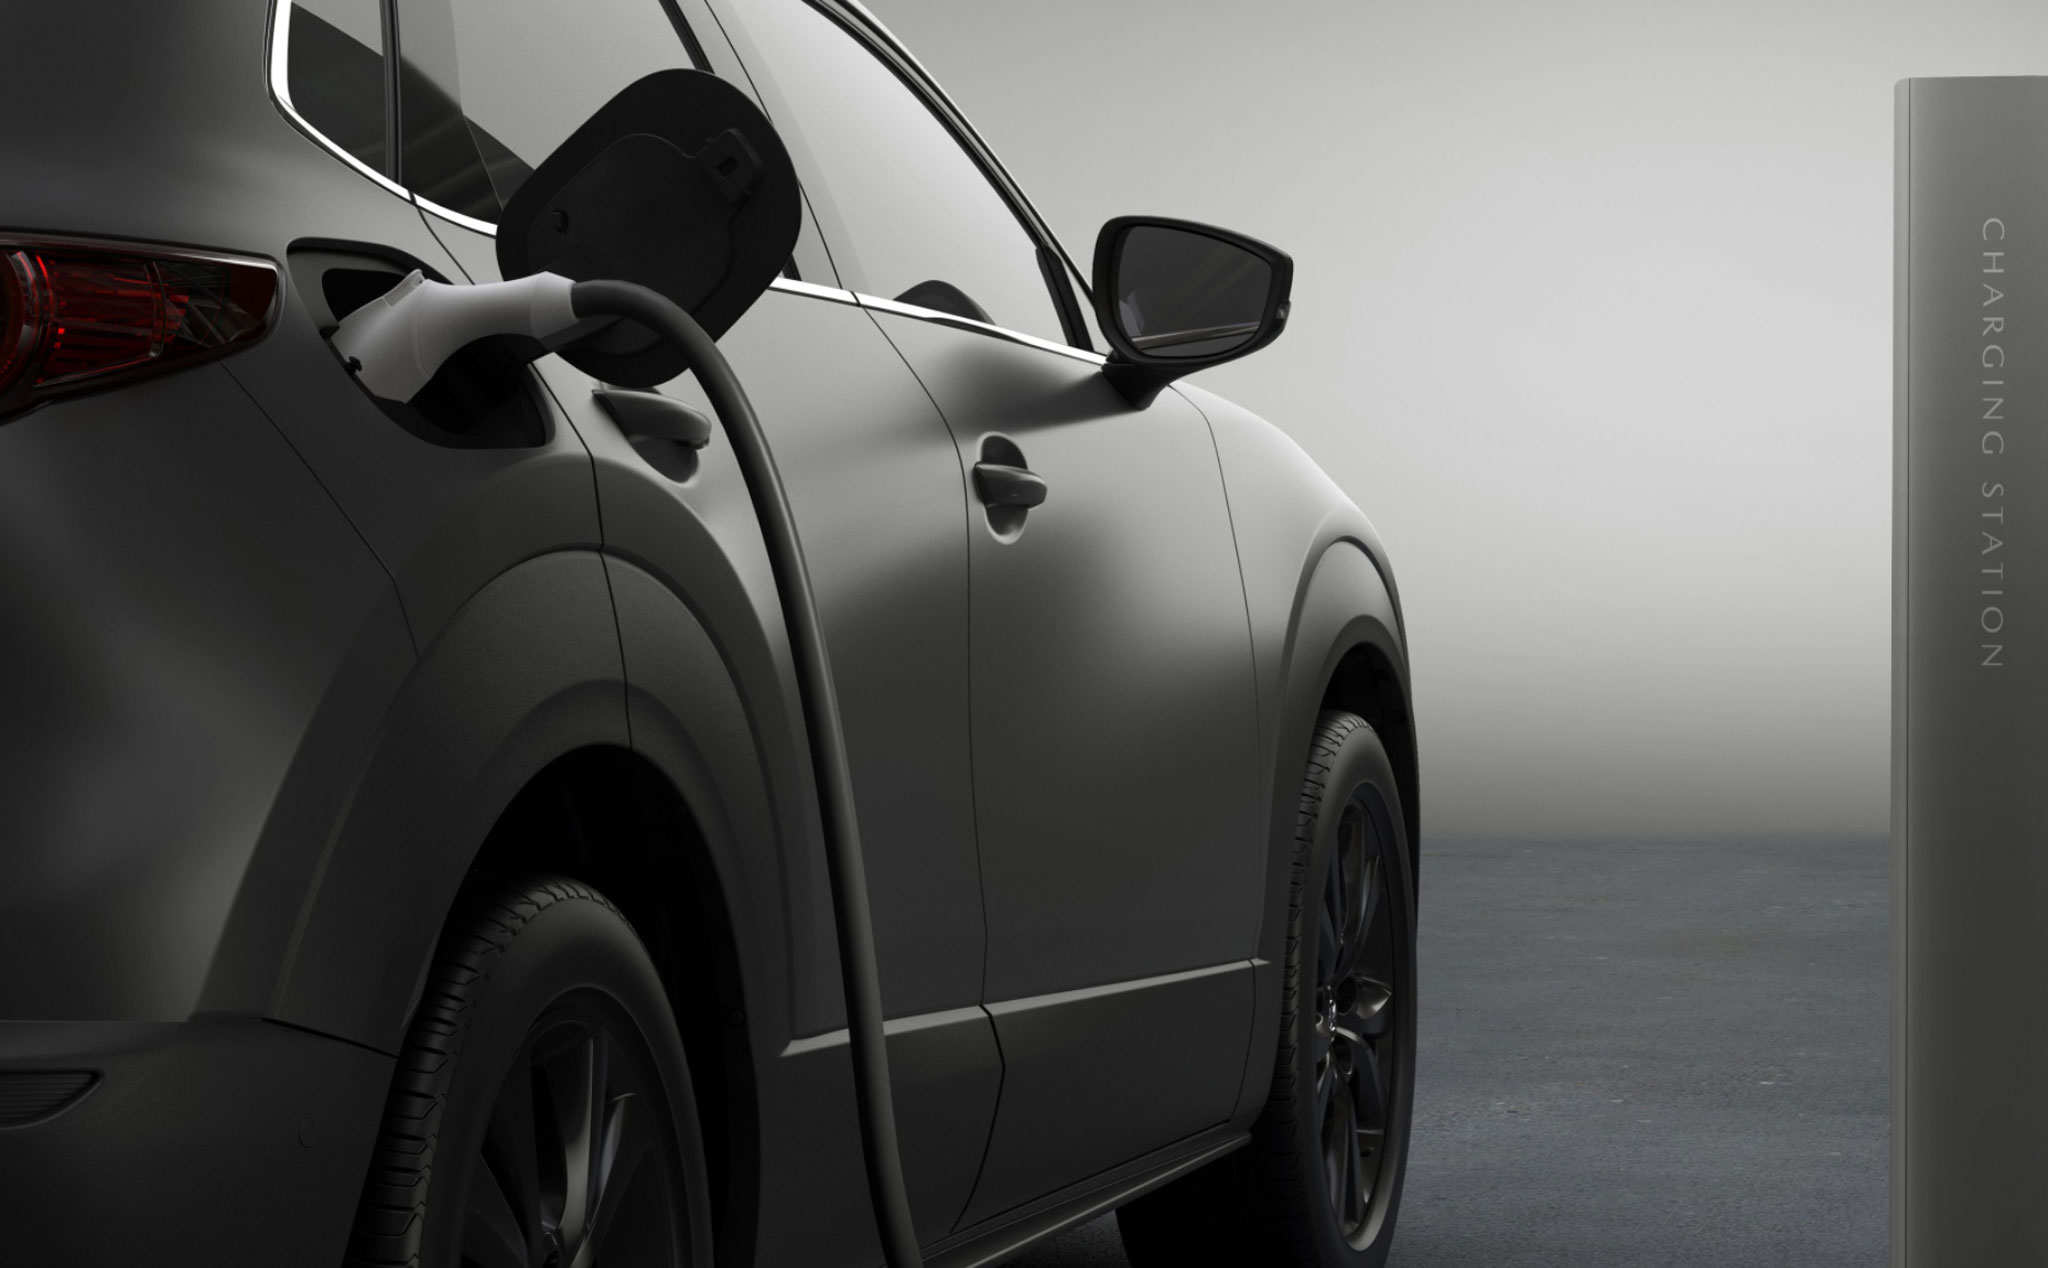 Ngày mai, Mazda sẽ ra mắt chiếc xe điện đầu tiên của hãng